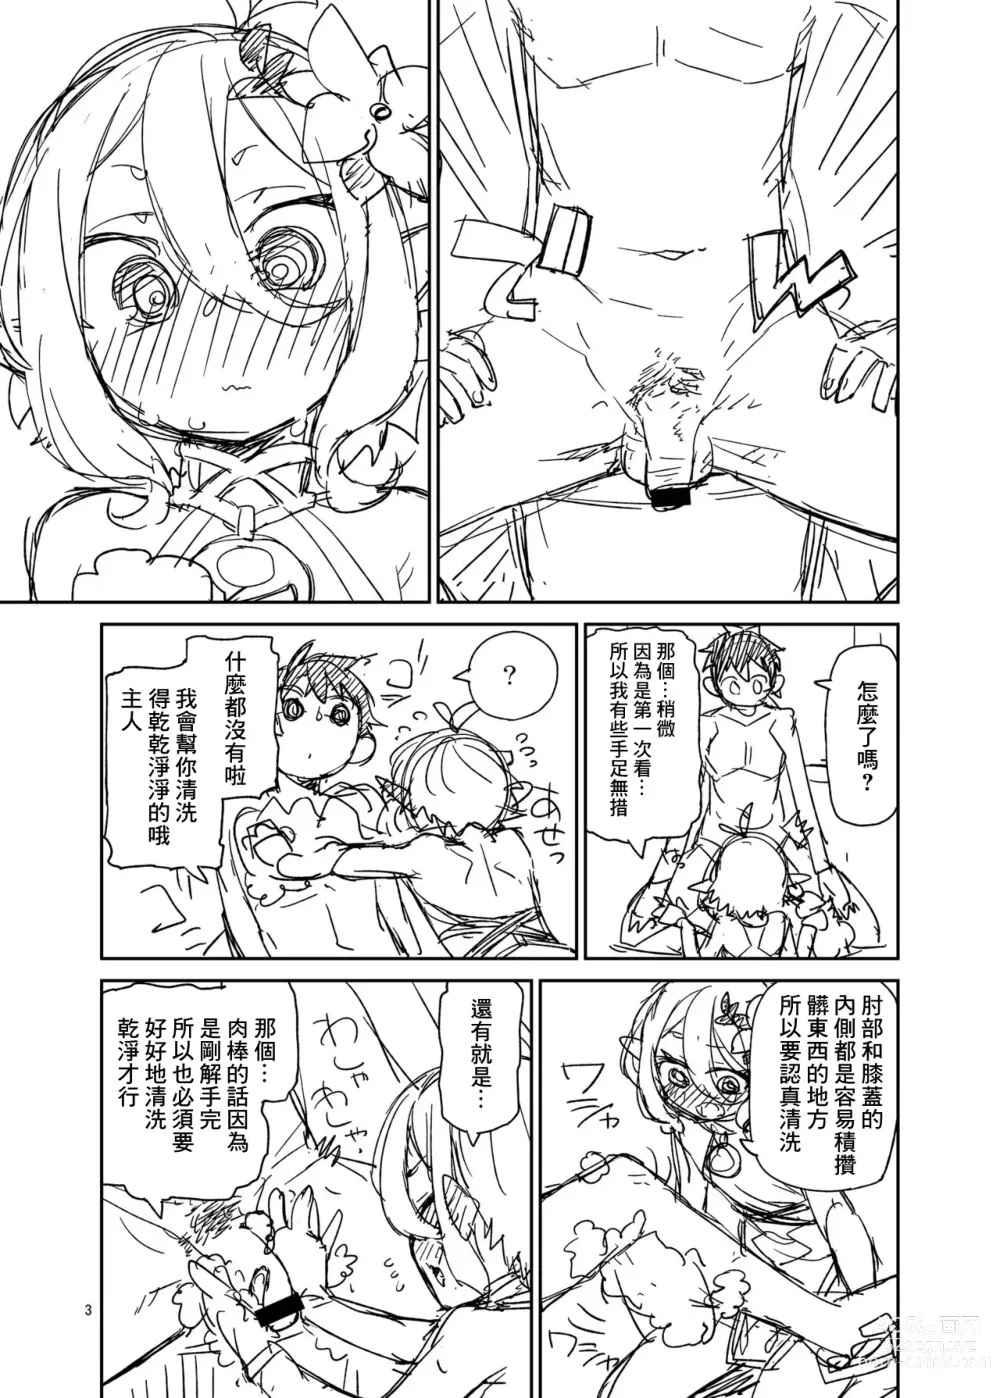 Page 4 of doujinshi Aruji-sama Ofuro de Gozaimasu yo